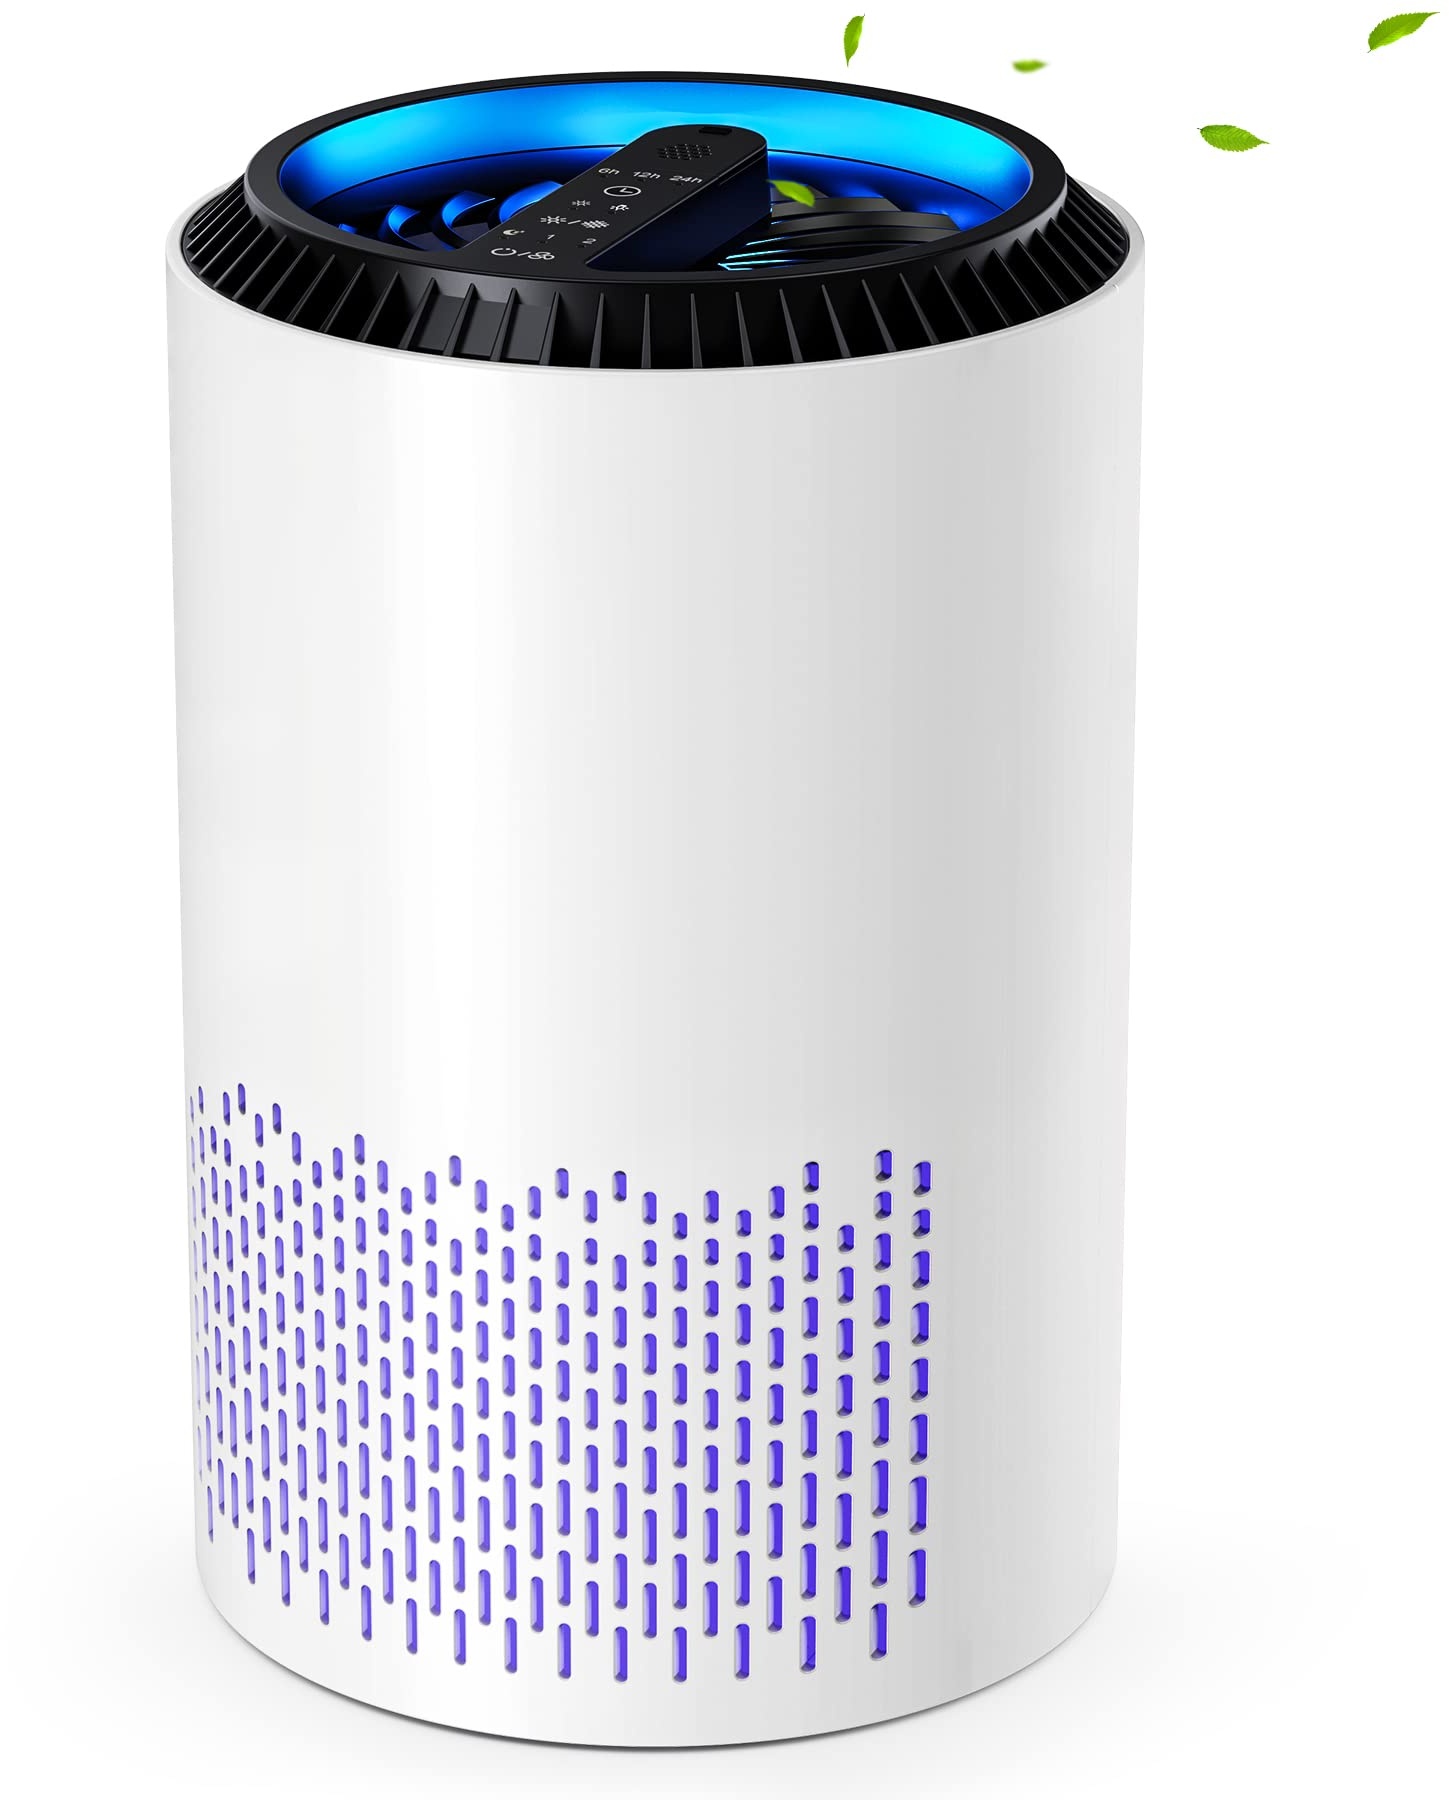 CONOPU Luftreiniger Allergiker, Air Purifier Hepa H13 Filter, Luftfilter mit 3 Filterstufen 99,97% Filterleistung, Raumluftreiniger mit Aromatherapie, für Staub Geruch, Weiß, OJH001